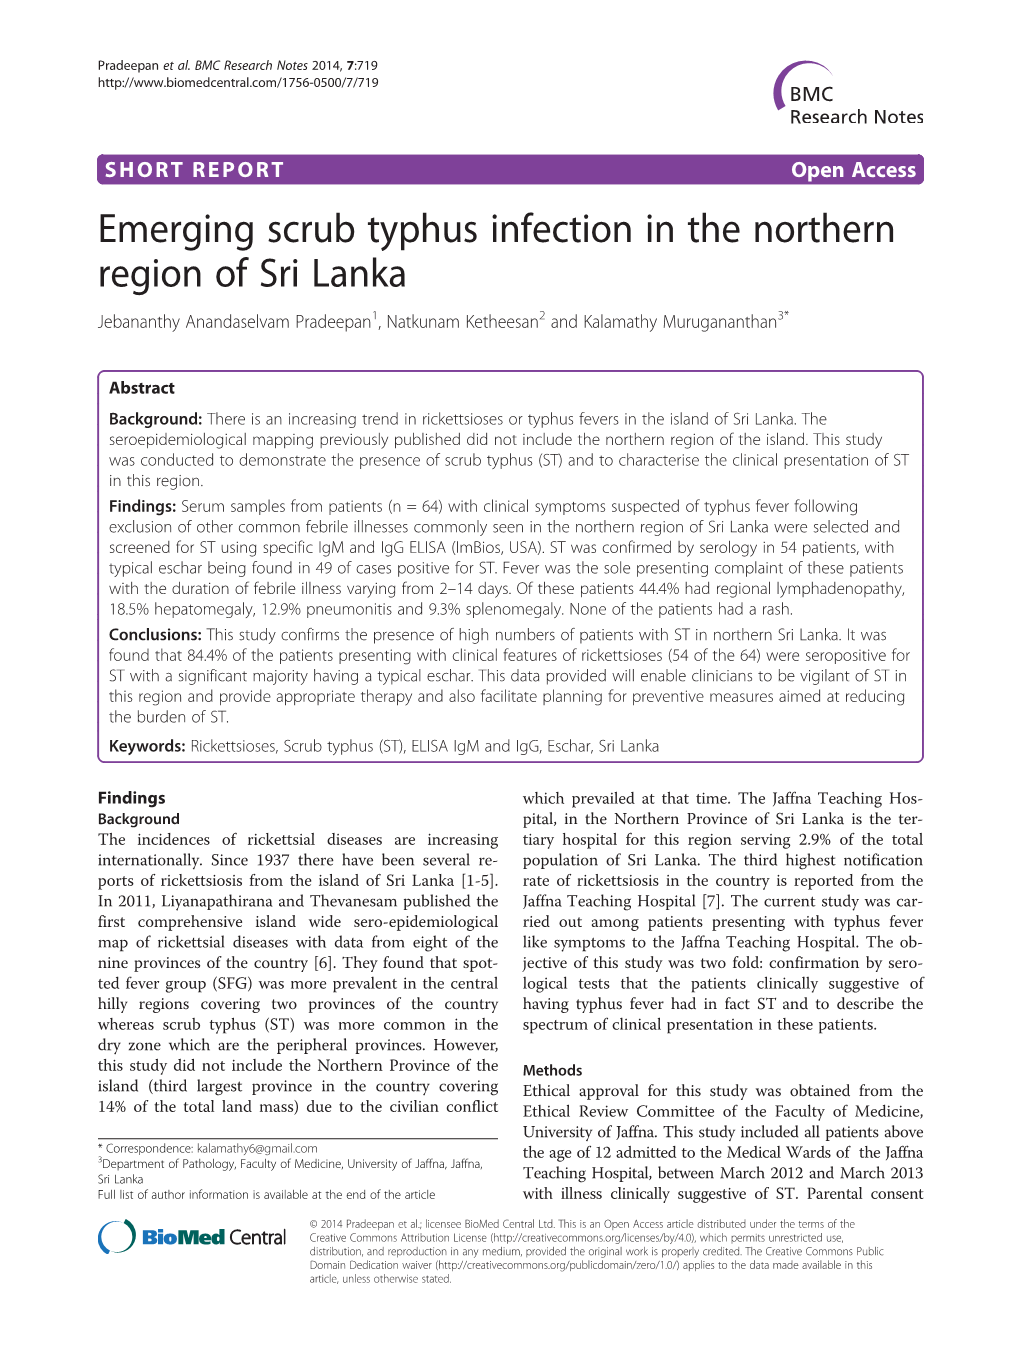 Emerging Scrub Typhus Infection in the Northern Region of Sri Lanka Jebananthy Anandaselvam Pradeepan1, Natkunam Ketheesan2 and Kalamathy Murugananthan3*